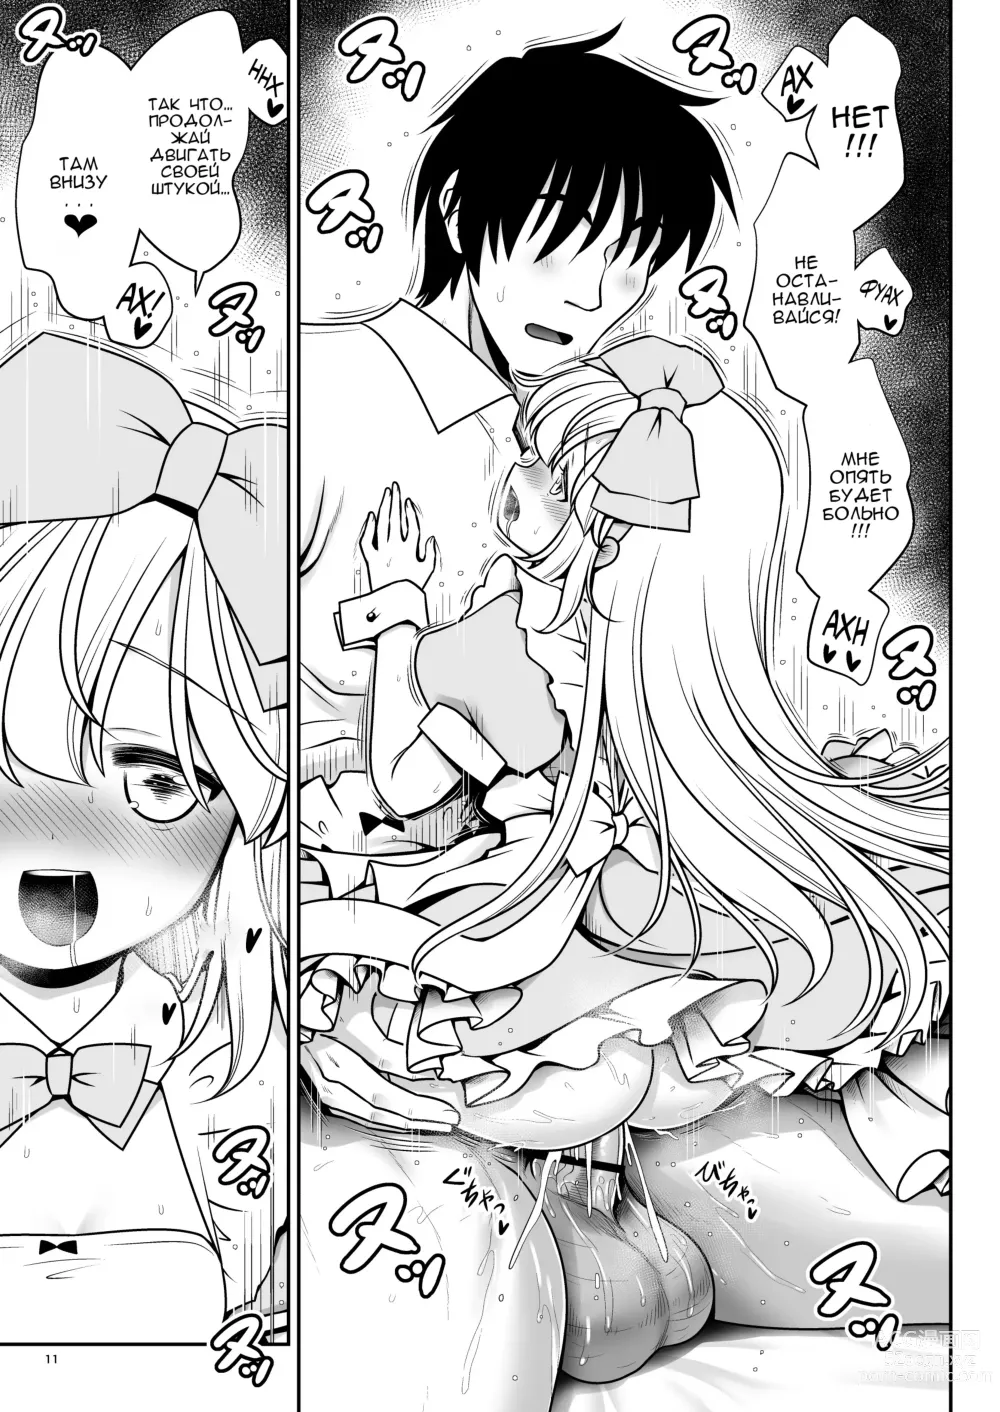 Page 11 of doujinshi Безнадёжная алиса, которая настолько подсела на сексуальное лечение, что без разбора ела все ядовитые пироженки